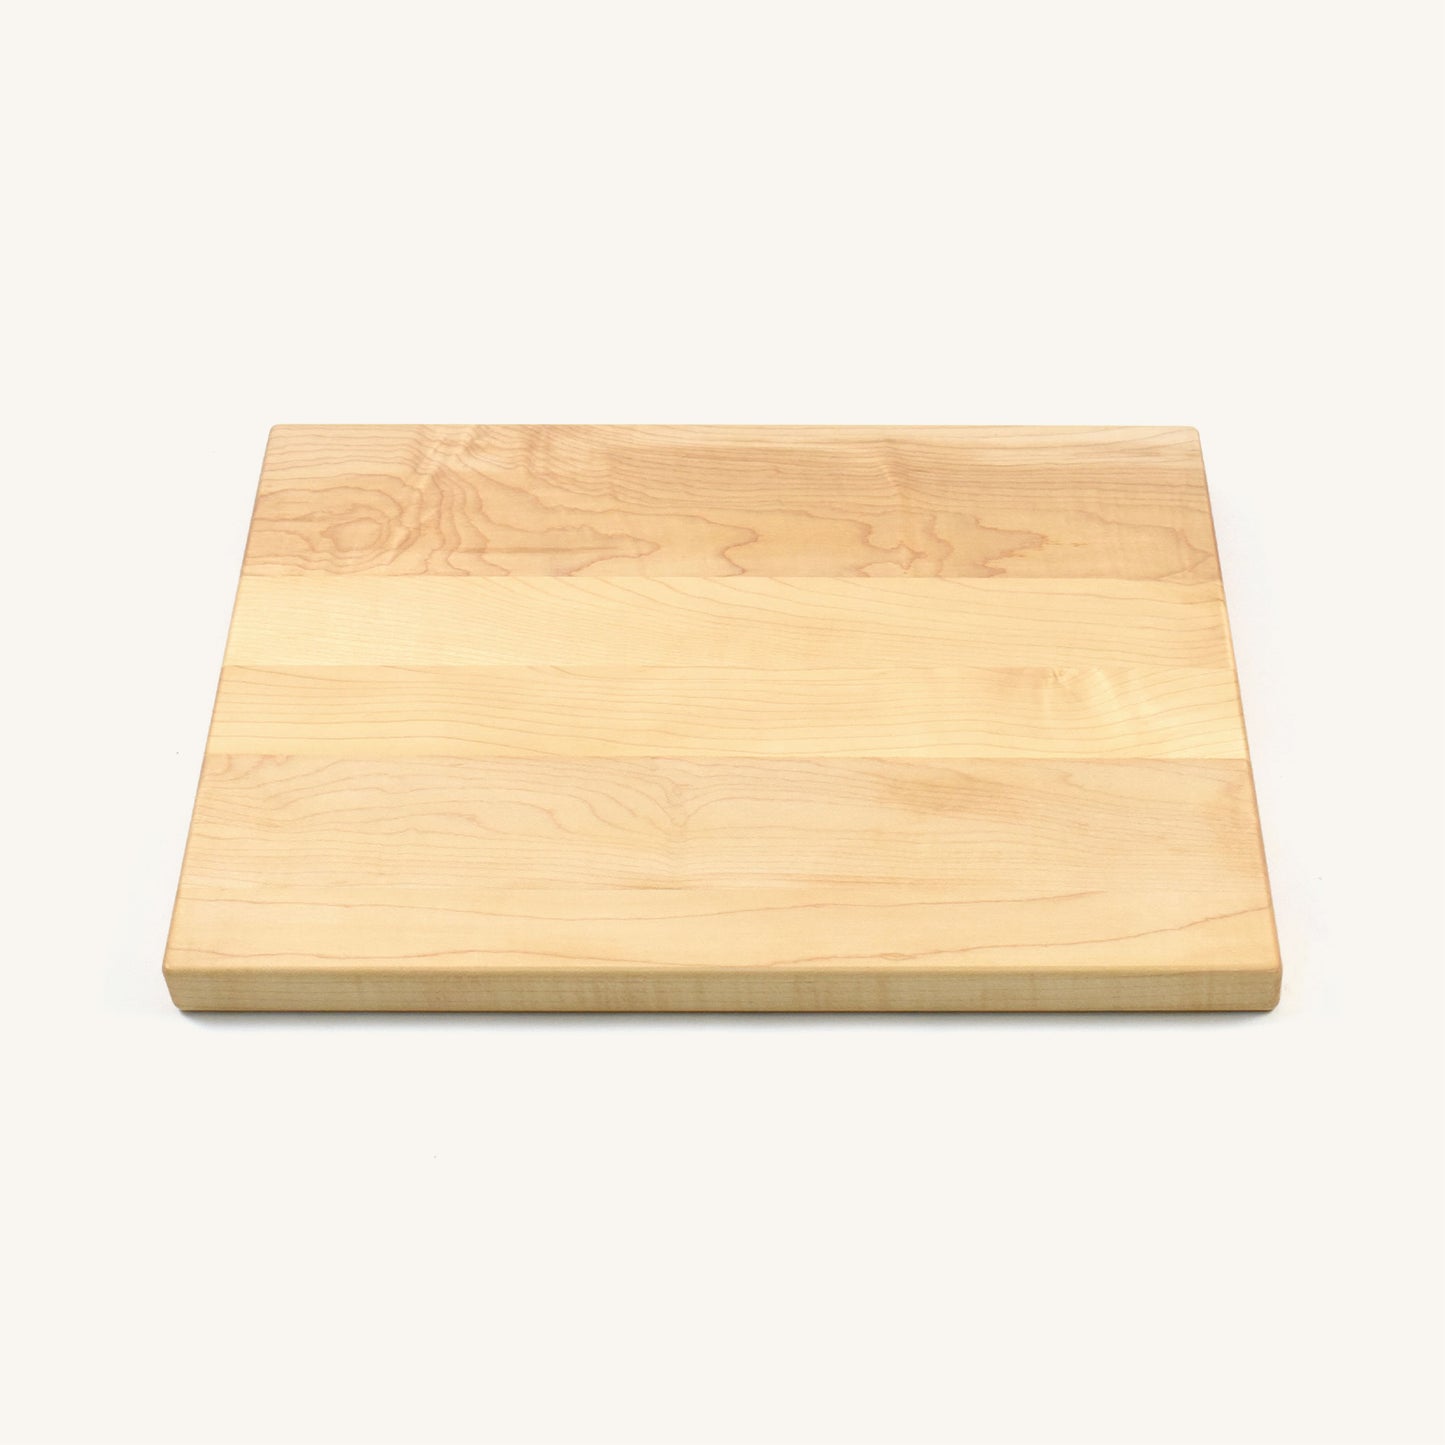 Tabla de cortar de madera con esquinas y bordes redondeados